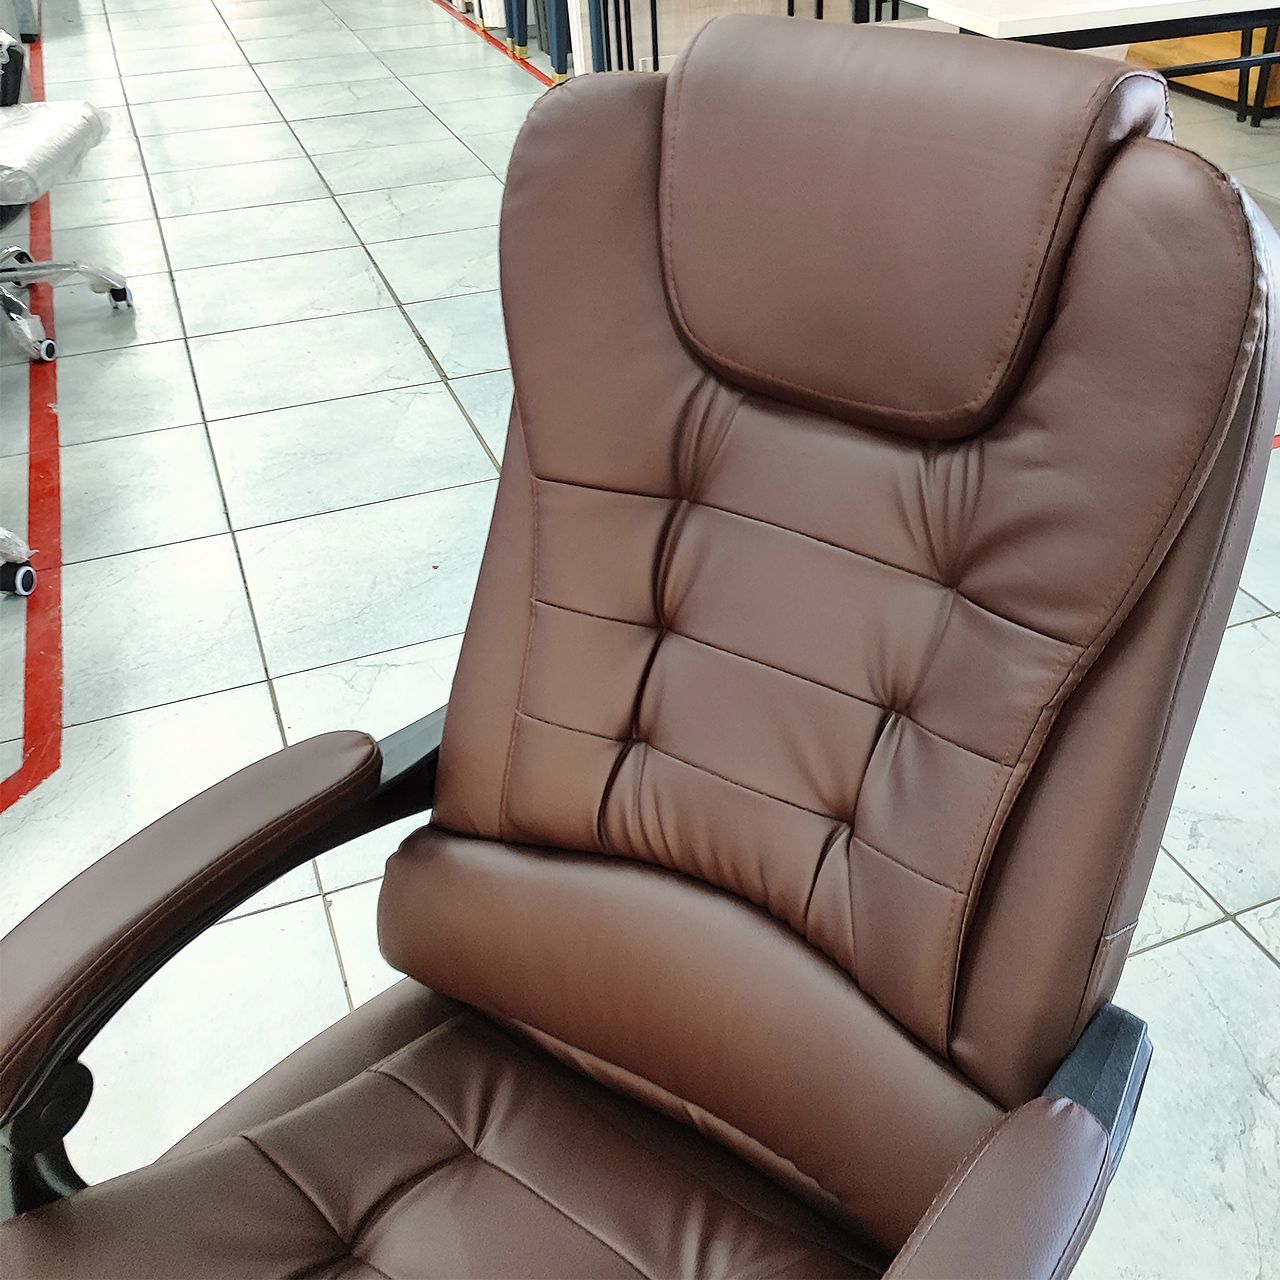 Кресло руководителя офисное «Делюкс» (коричневый)